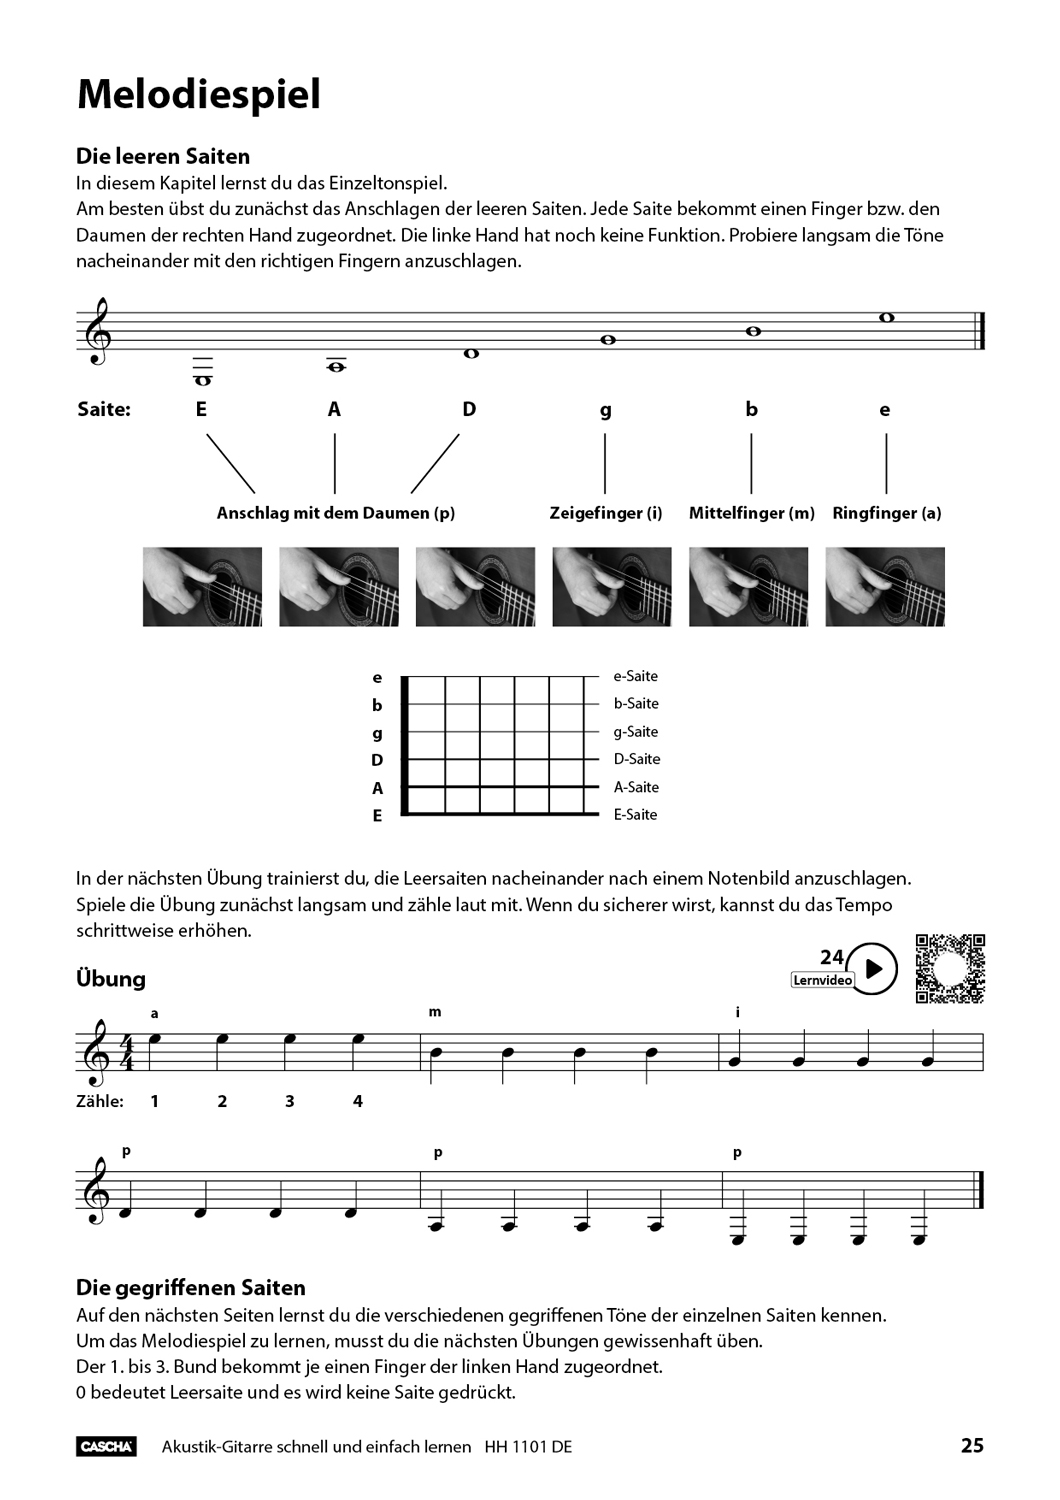 Akustik-Gitarre - Schnell und einfach lernen Seiten 7